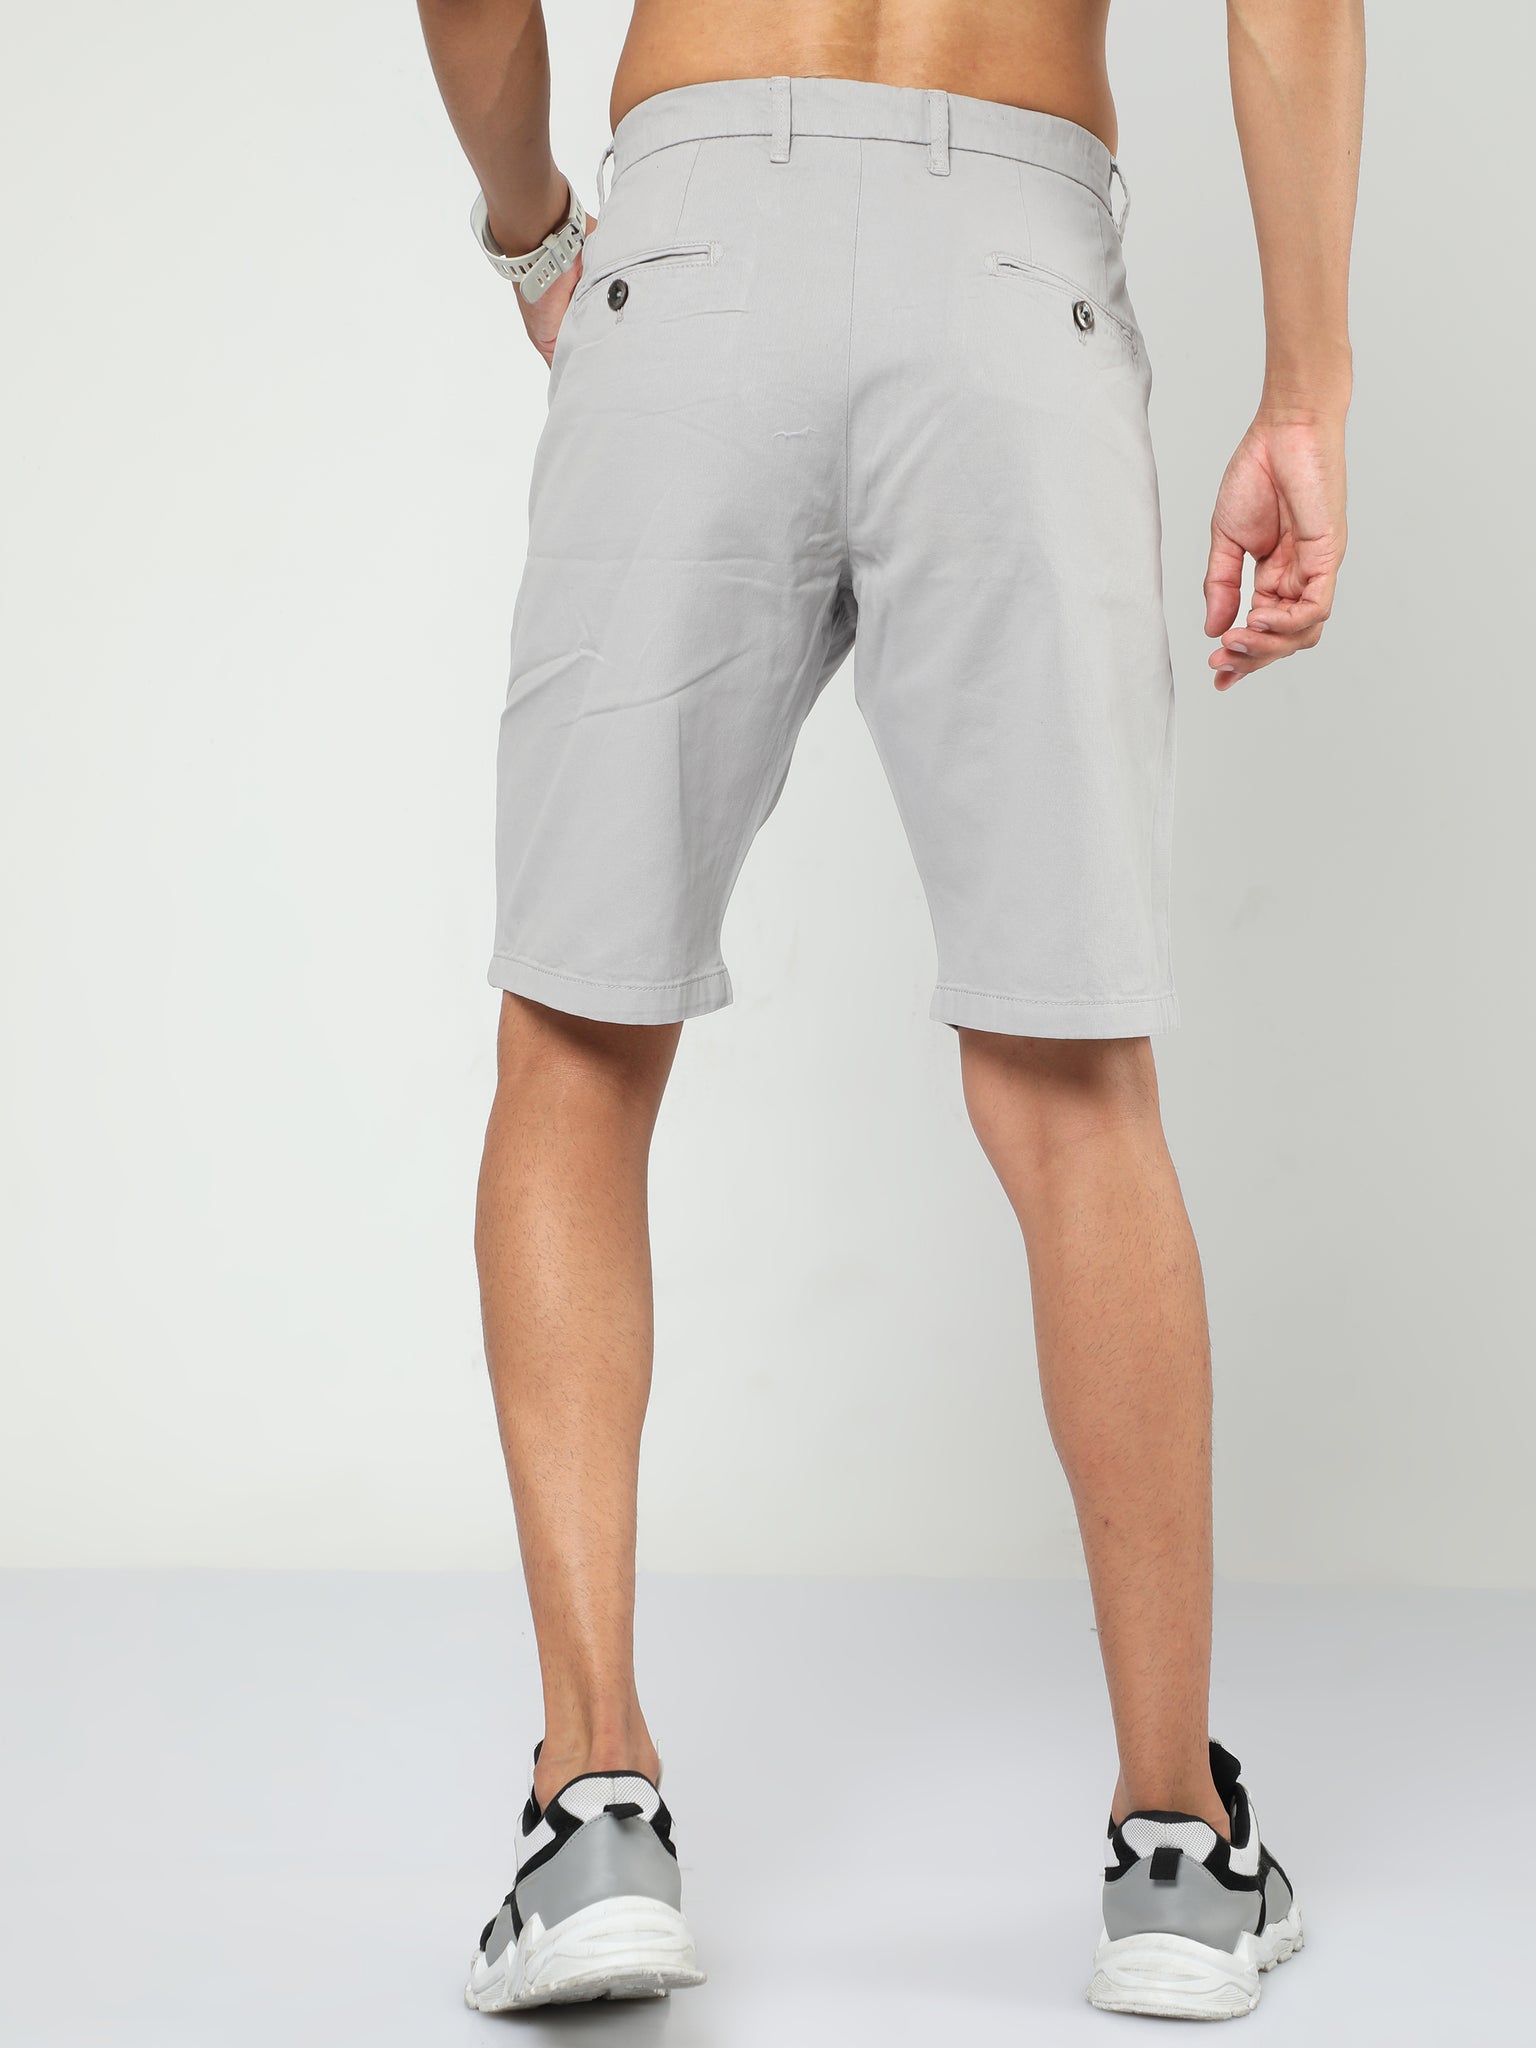 French Grey Shorts